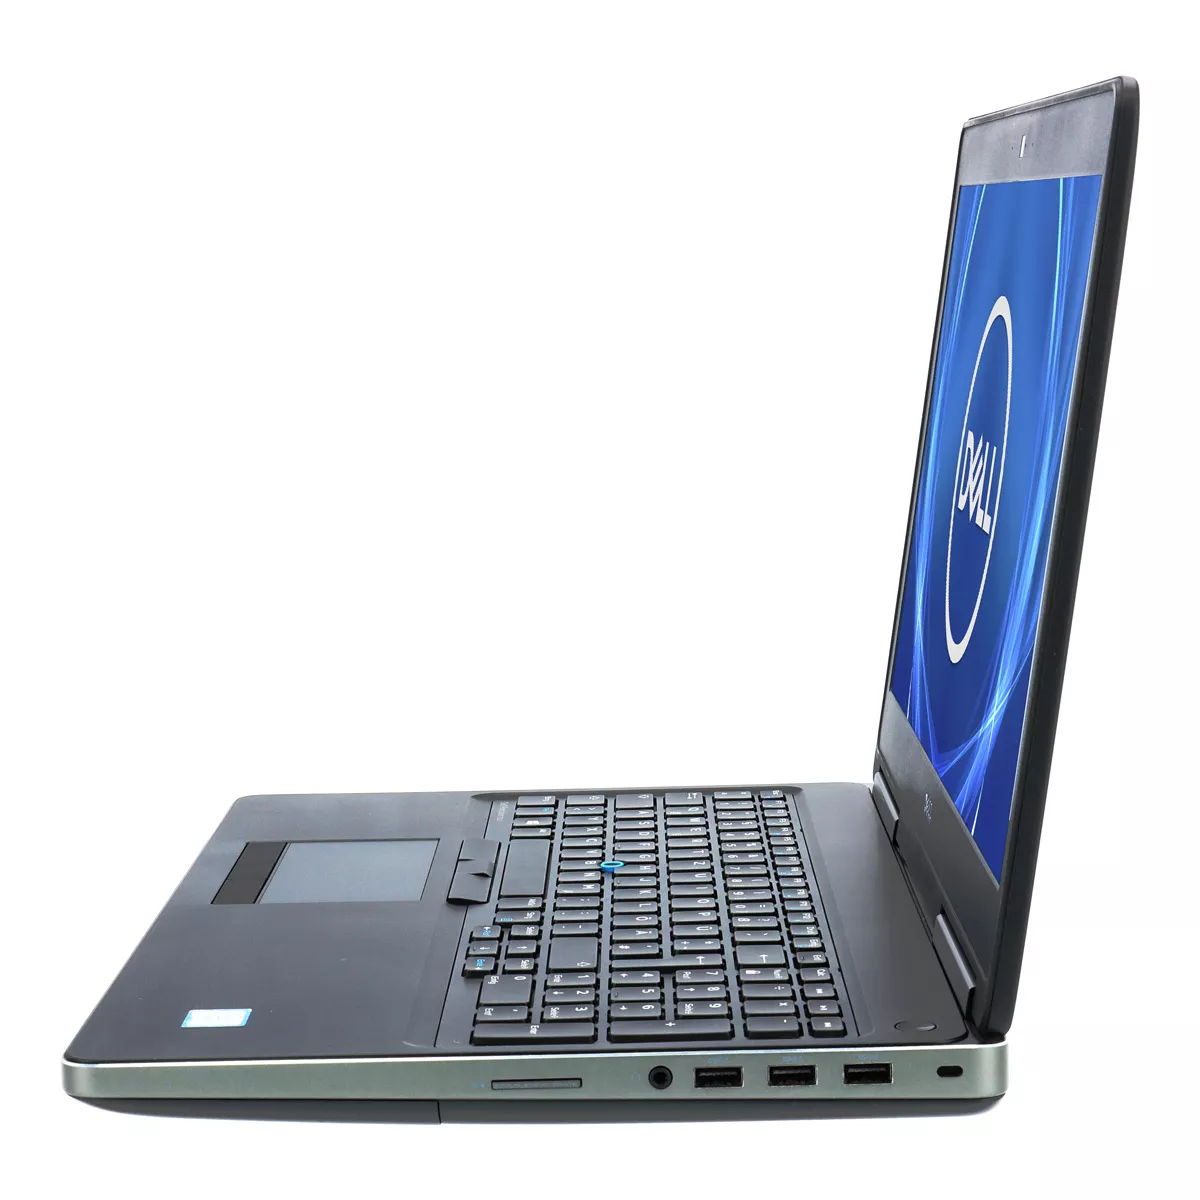 Dell Precision 7520 Quad Core i7 6820HQ nVidia Quadro M2200 Full-HD 16 GB 500 GB SSD Webcam B-Ware